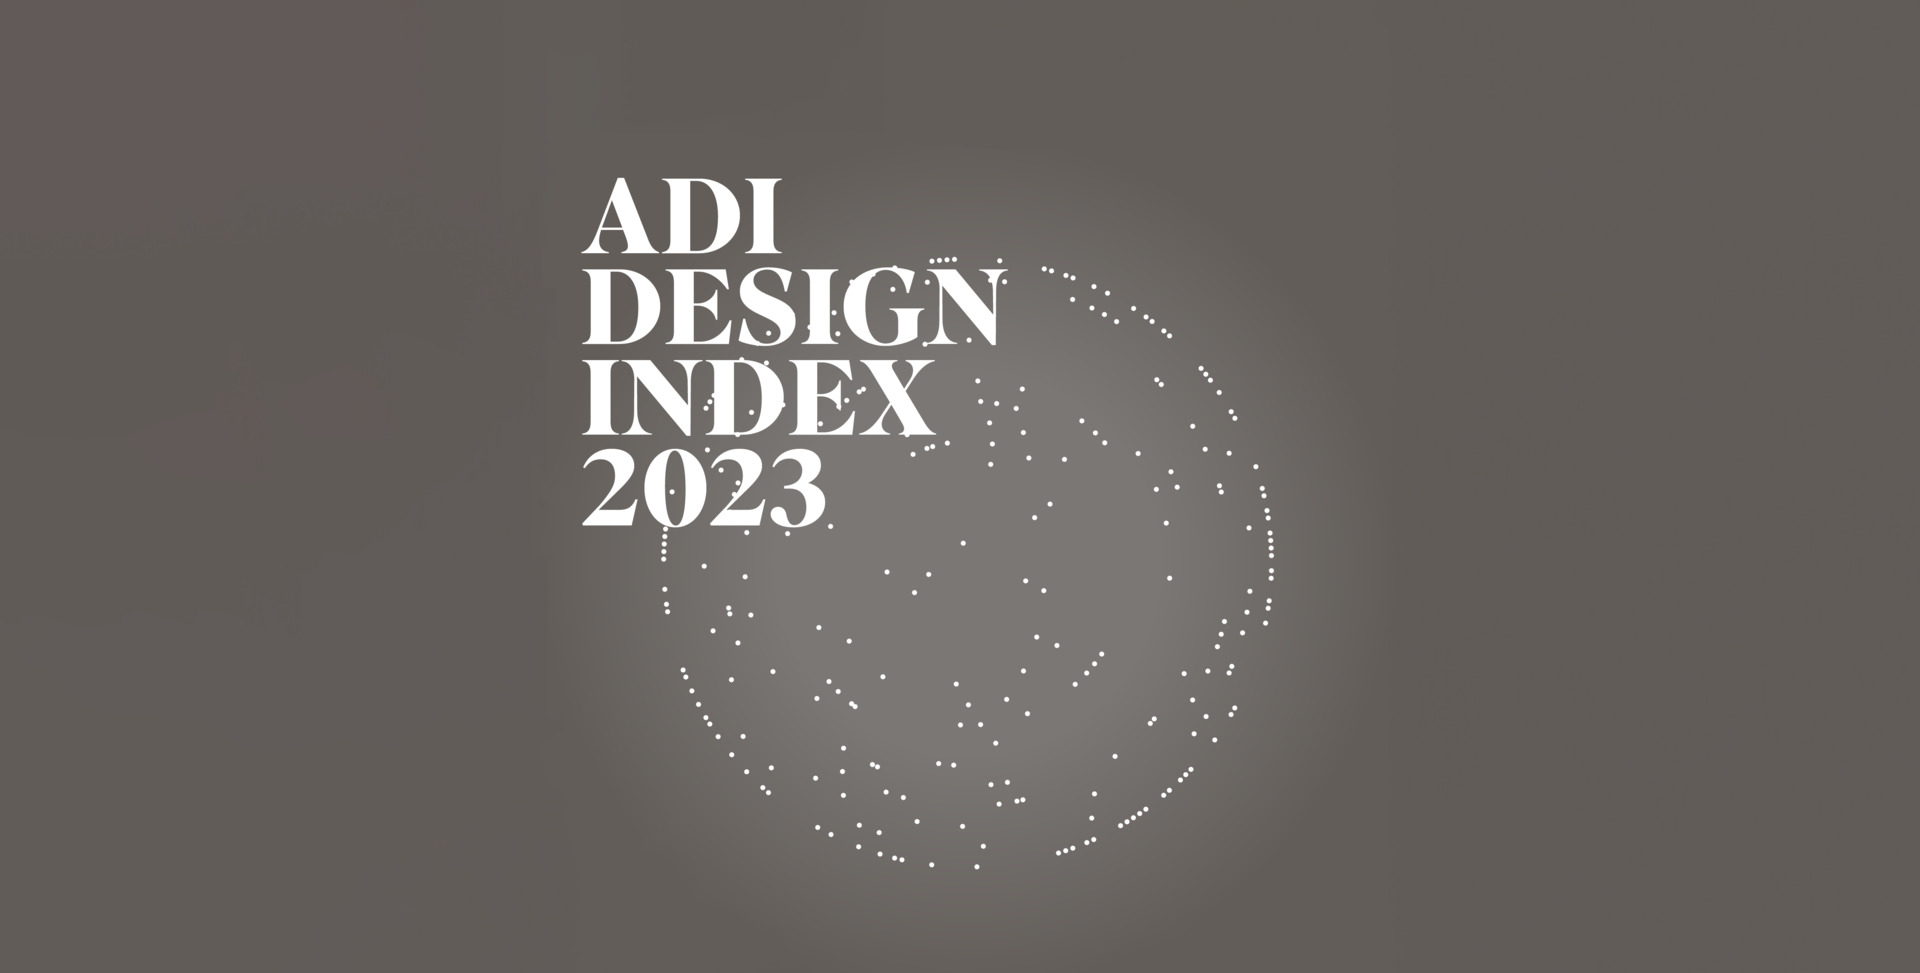 Immagine del logo ADI DESIGN INDEX 2023, al centro un mondo fatto da pallini bianchi su sfondo grigio.